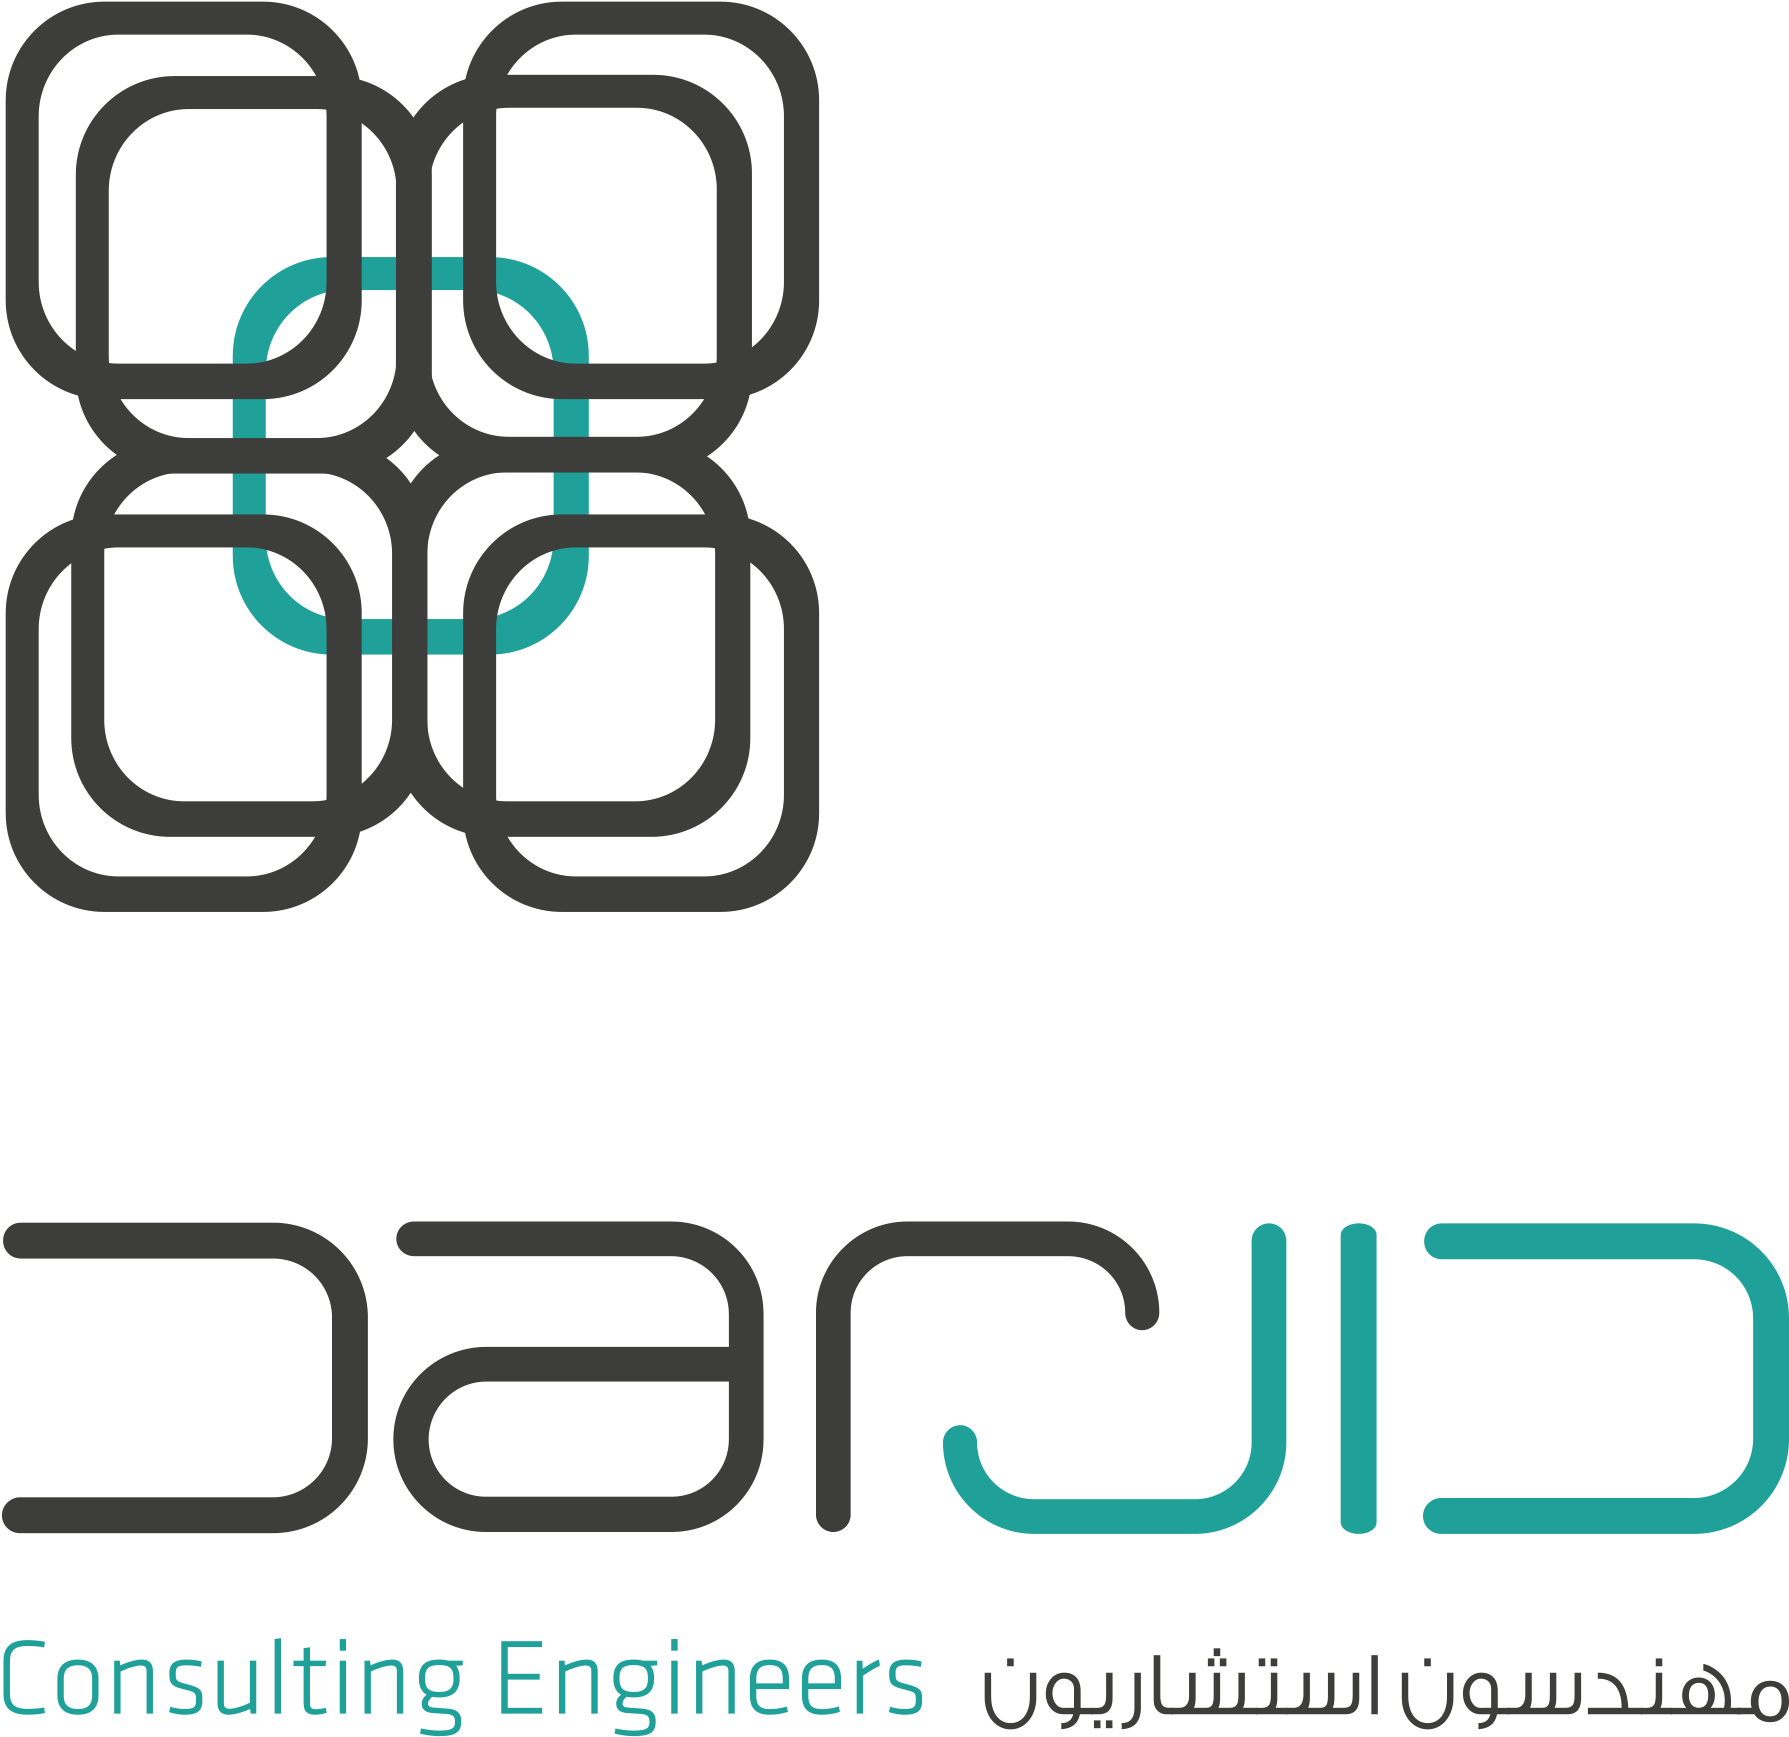 Dar Consulting Engineers - Dar Consulting Engineers (1809x1745)